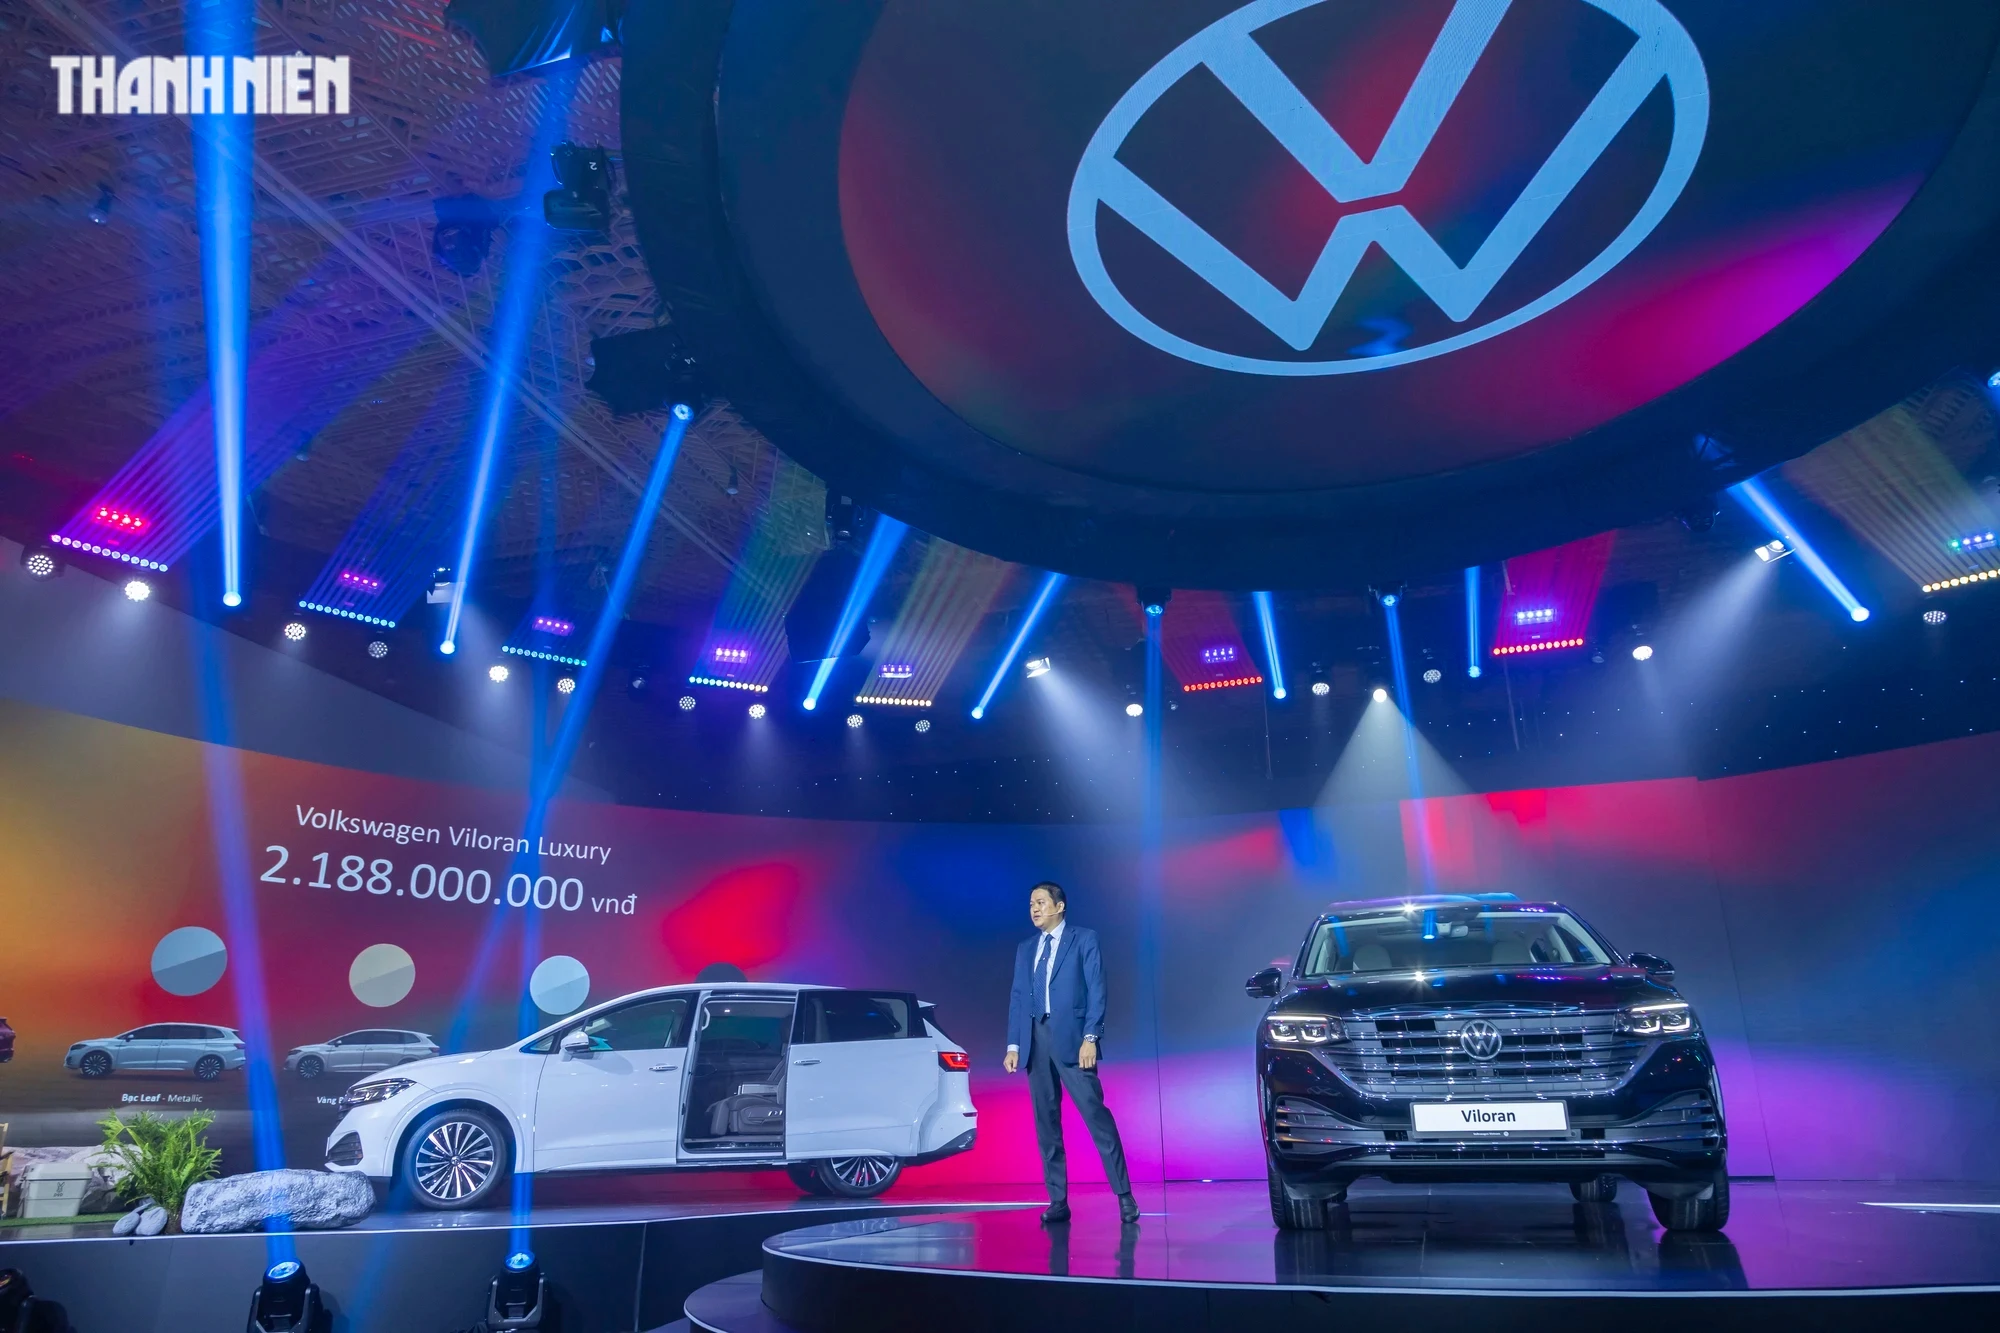 Giá từ 1,989 tỉ đồng, Volkswagen Viloran có gì hấp dẫn khách Việt?- Ảnh 1.